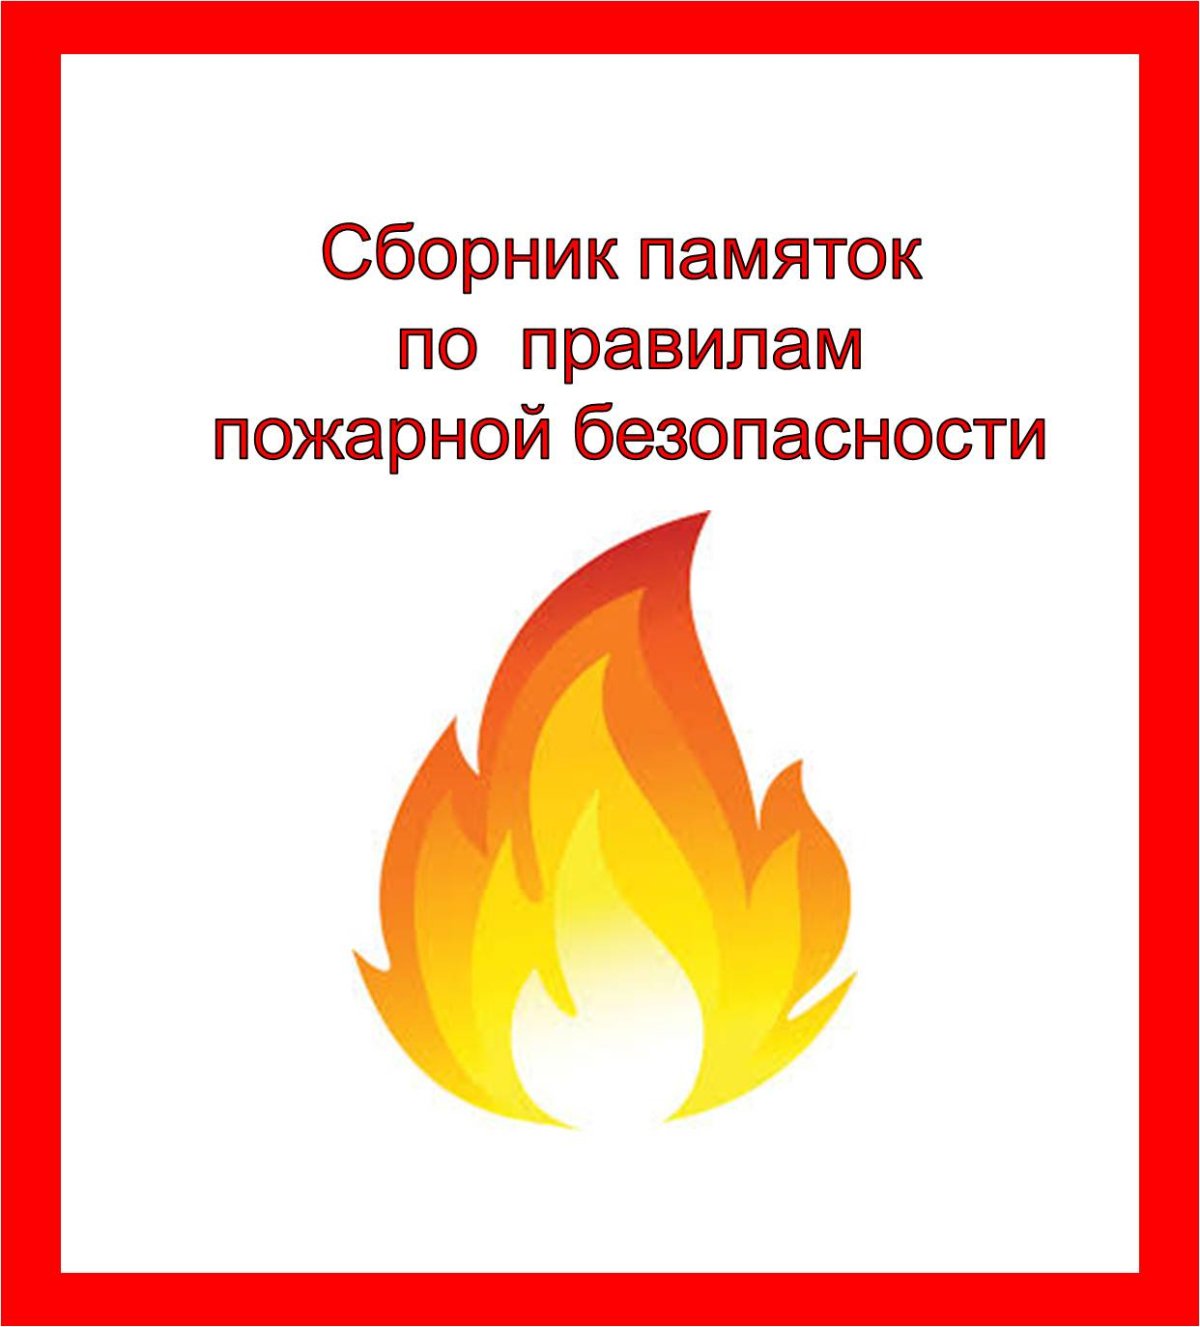 Сборник памяток по пожарной безопасности